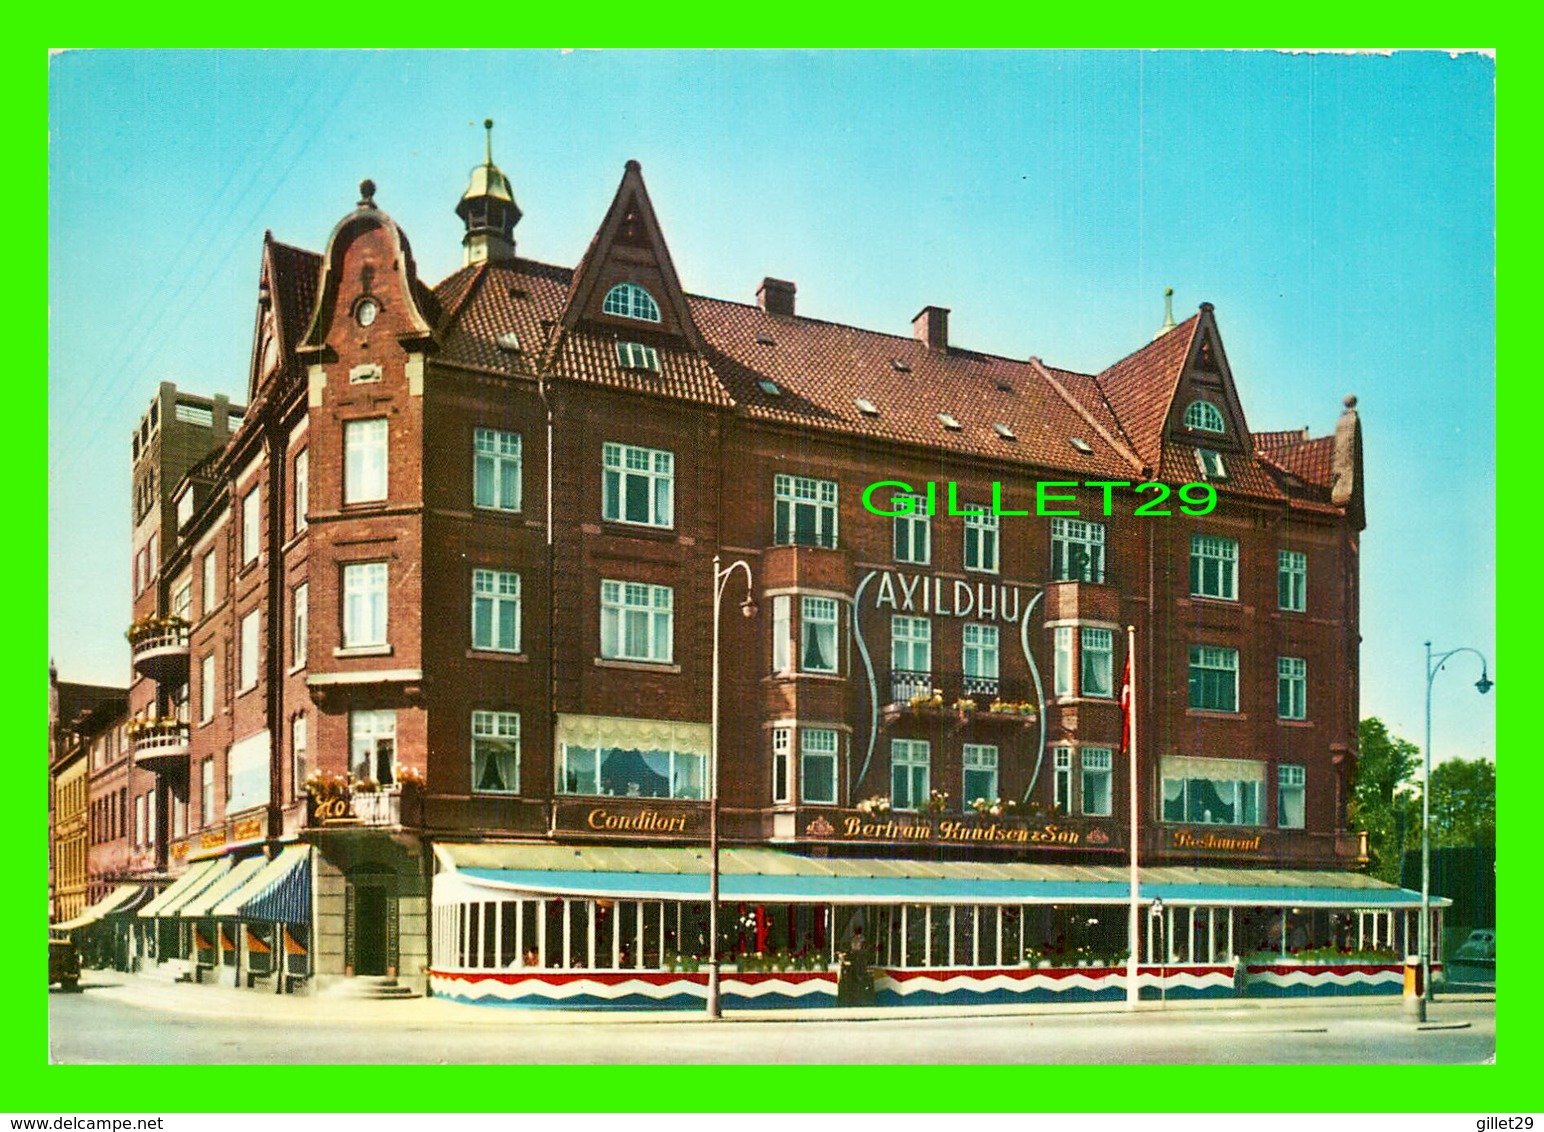 KOLDING, DANMARK - SAXILDHUS, KONDITORI, HOTEL OG RESTAURANT - - Danemark